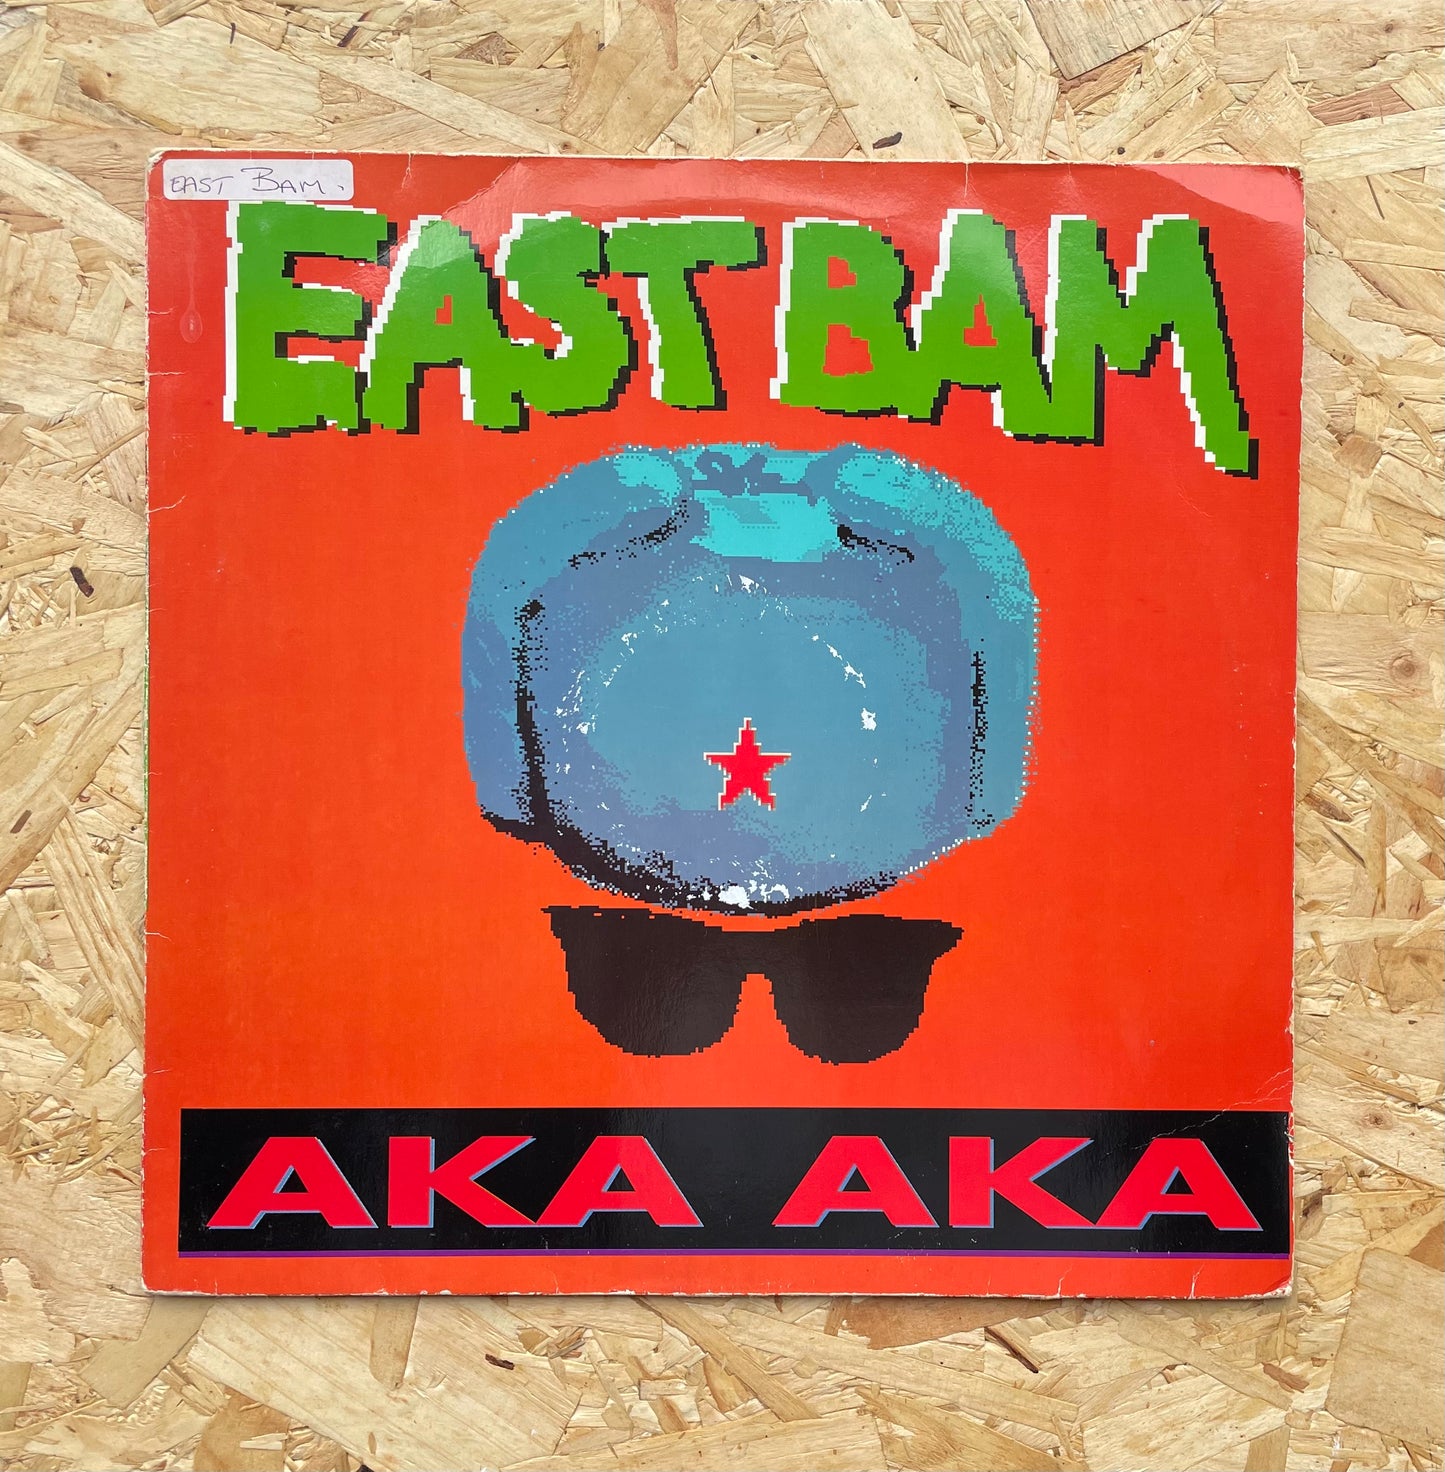 East Bam – Aka Aka